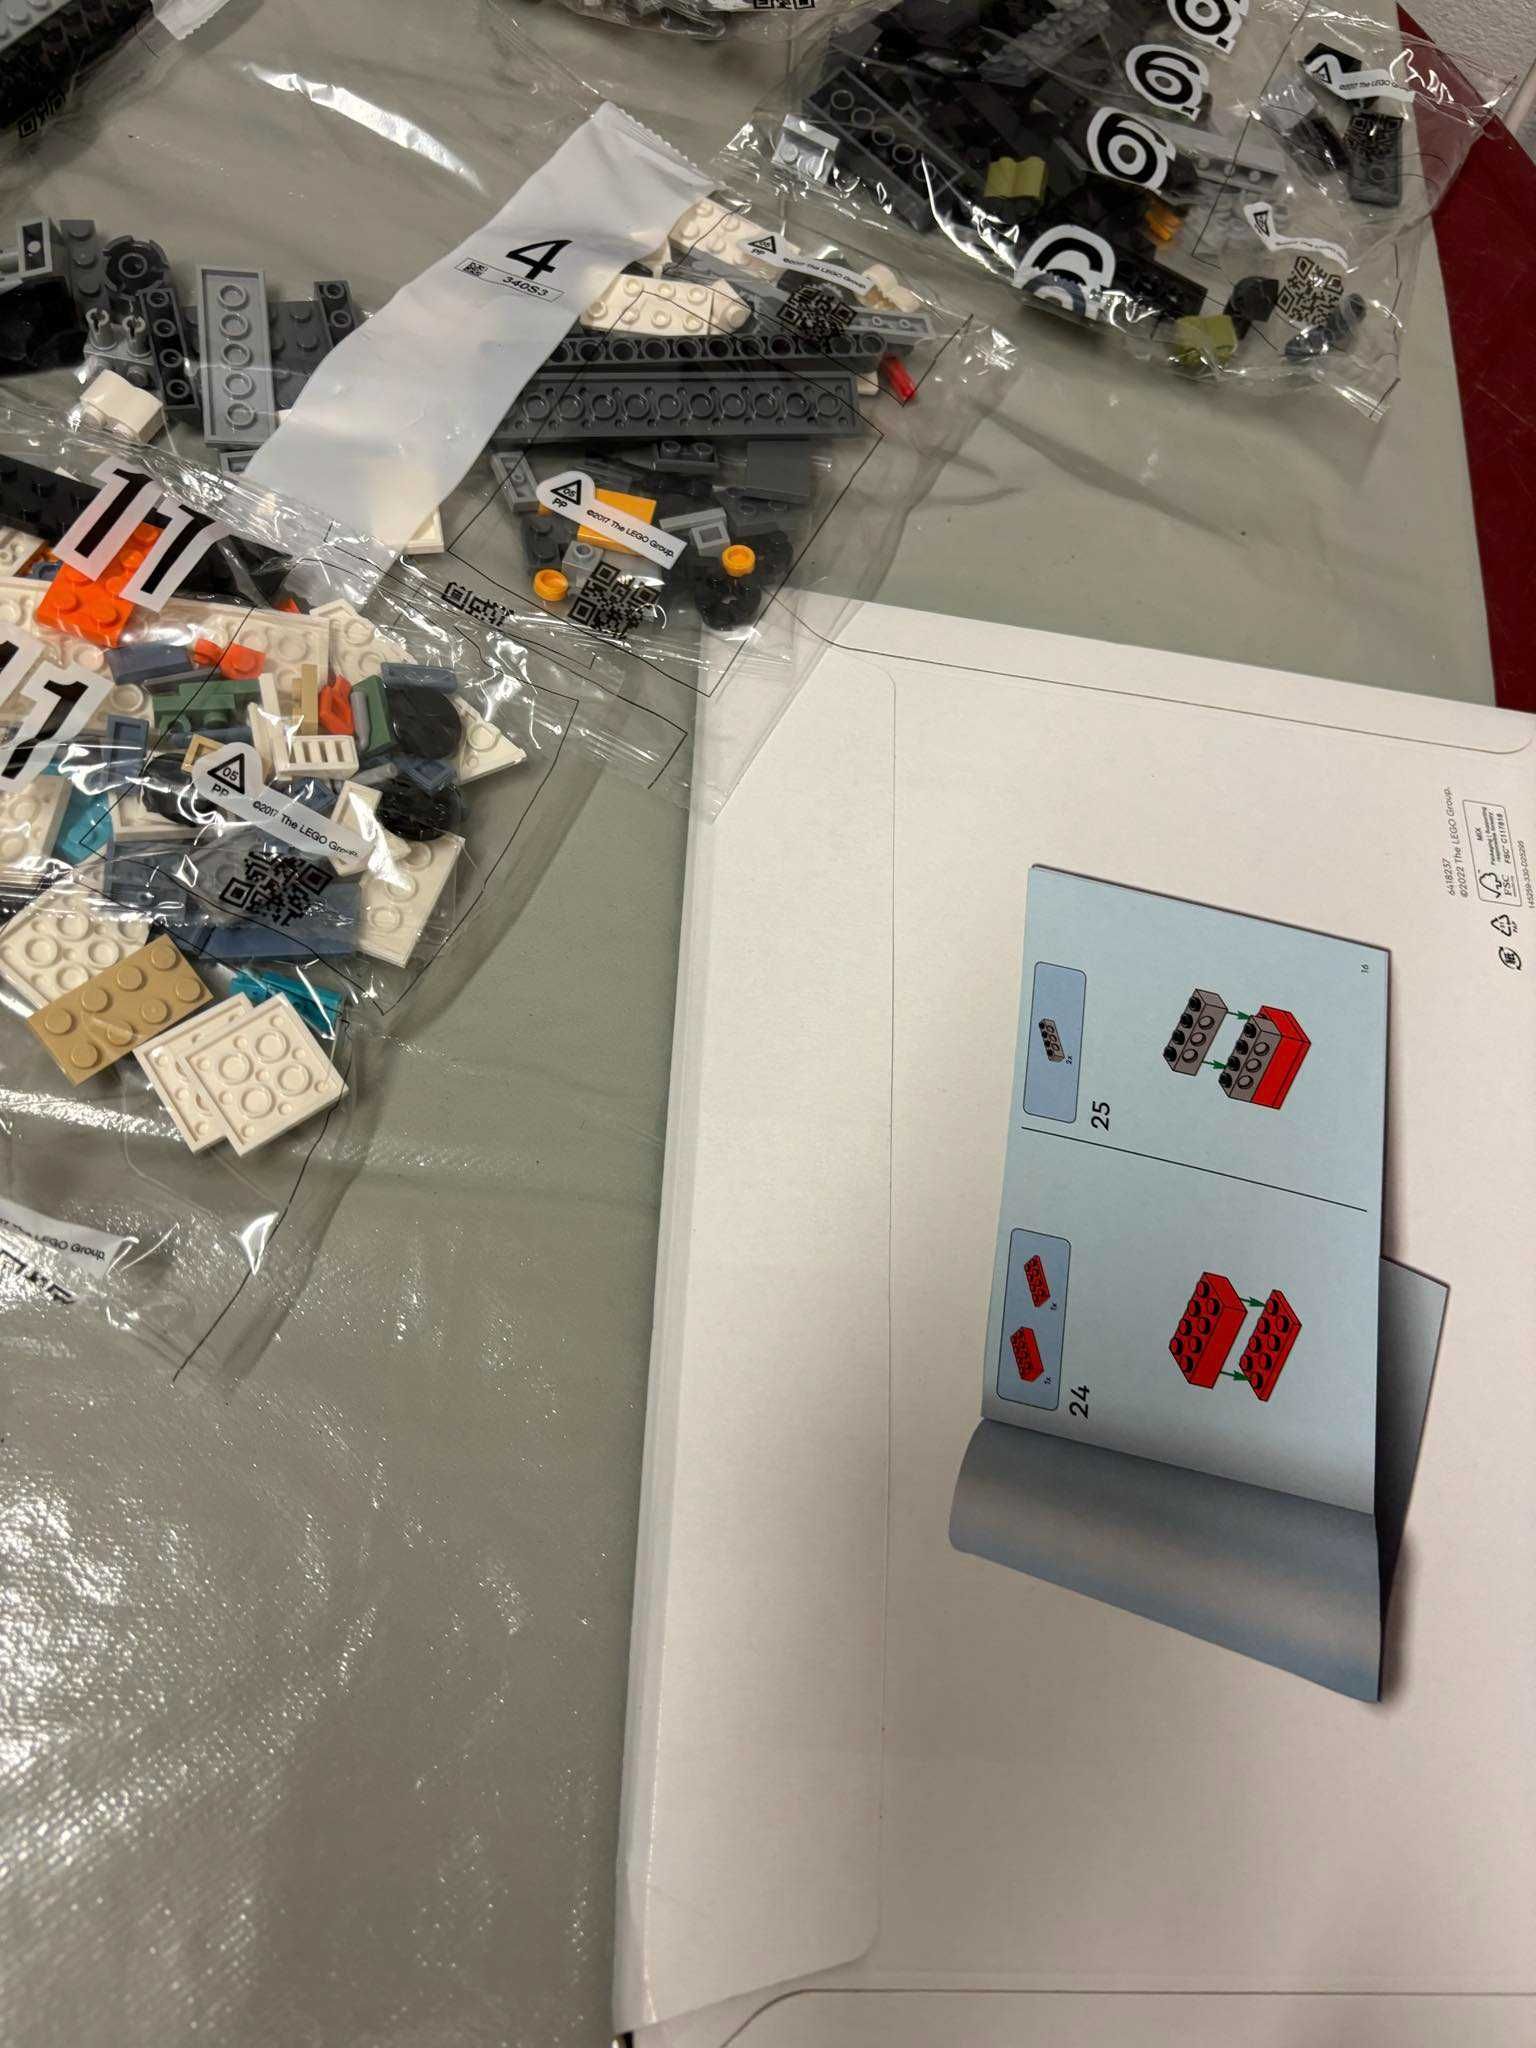 Lego 75357 Star Wars Duch i Upiór II